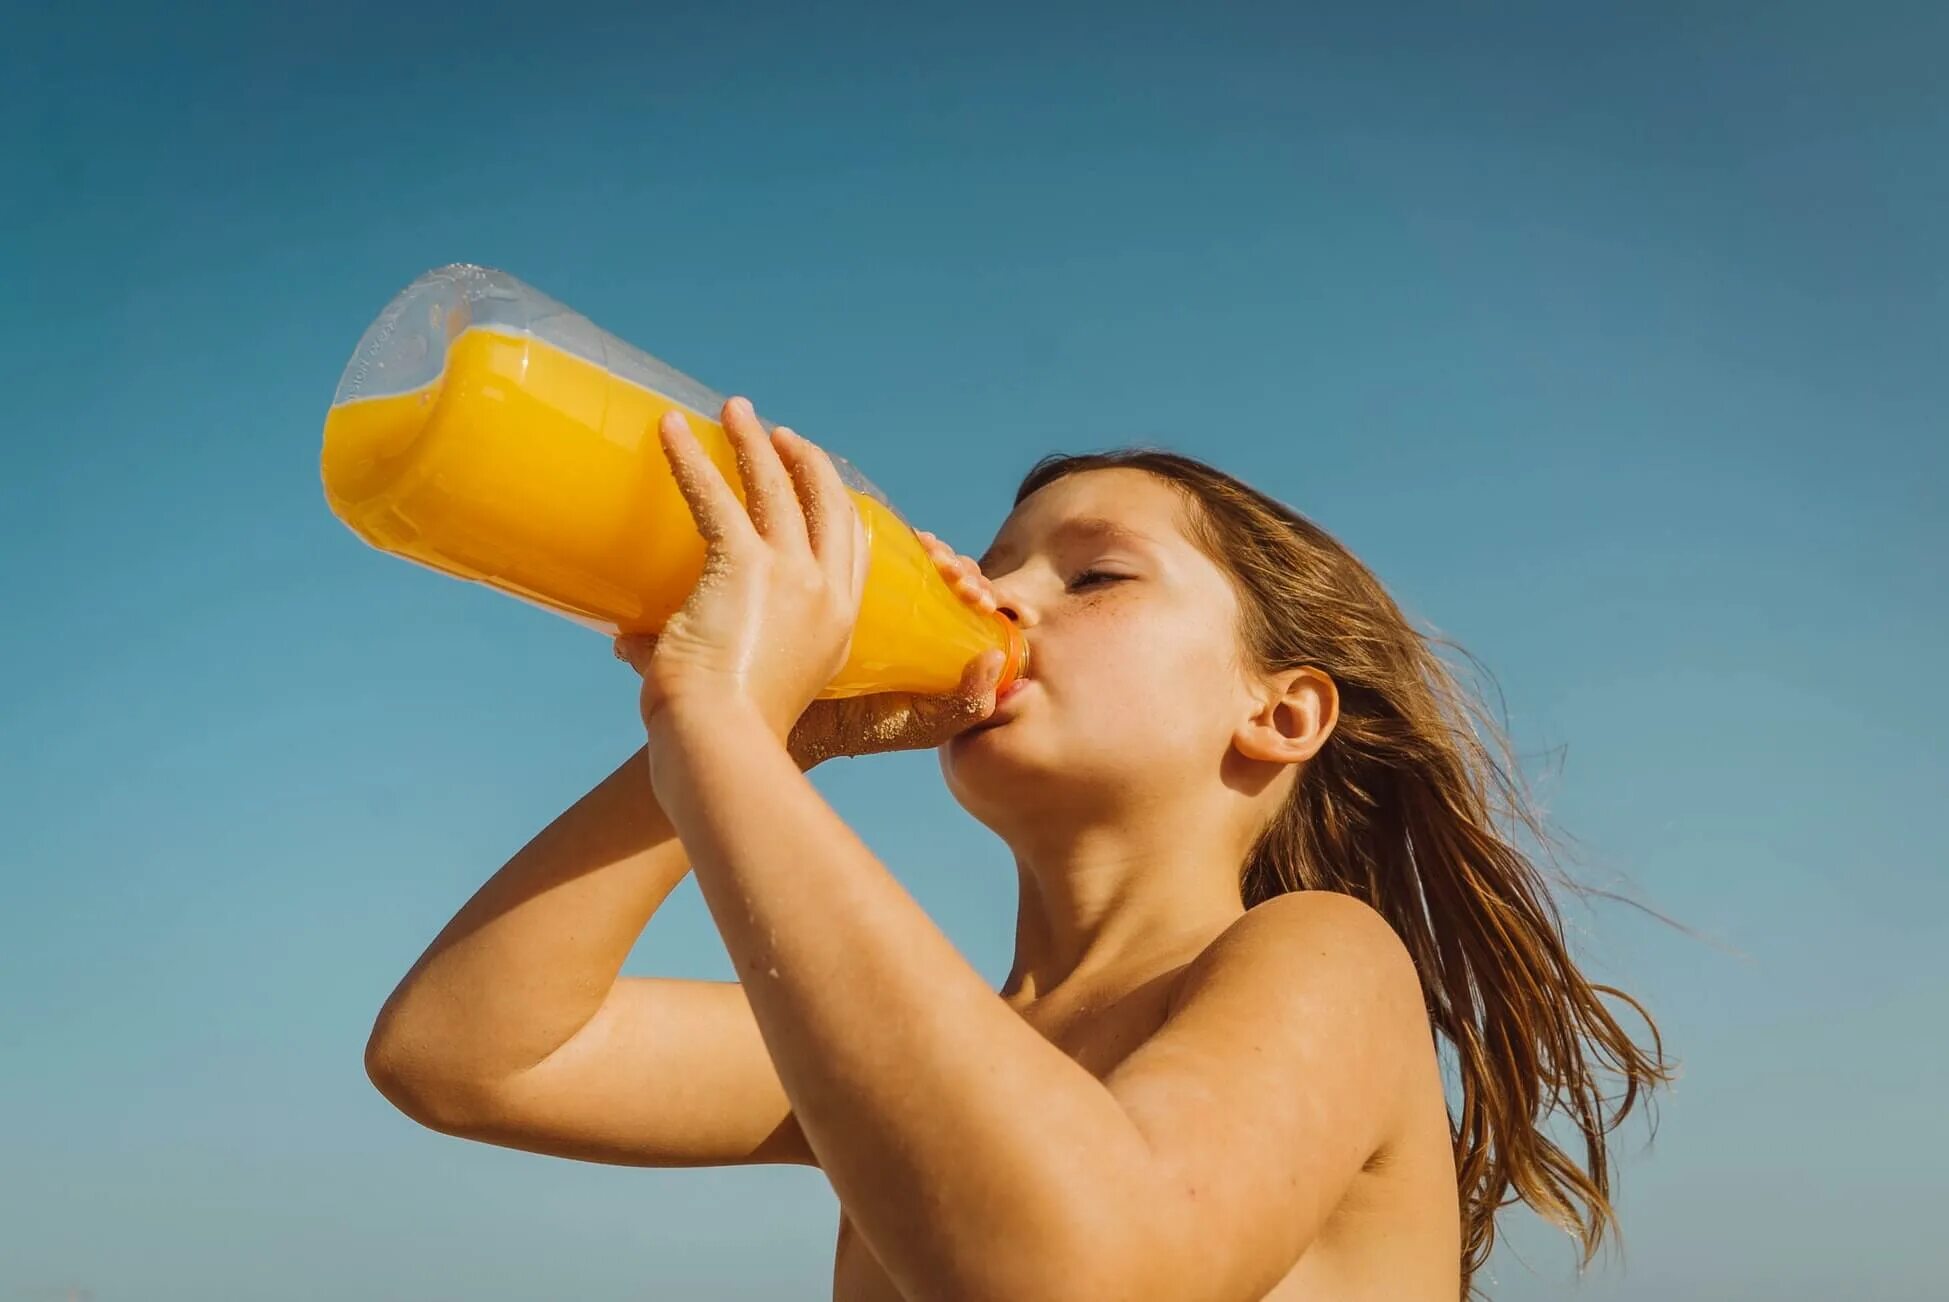 Пить сок. Пьет апельсиновый сок. Левушка пьёт апельсиновый сок. Люди с лимонадом. Удовлетворение жажды